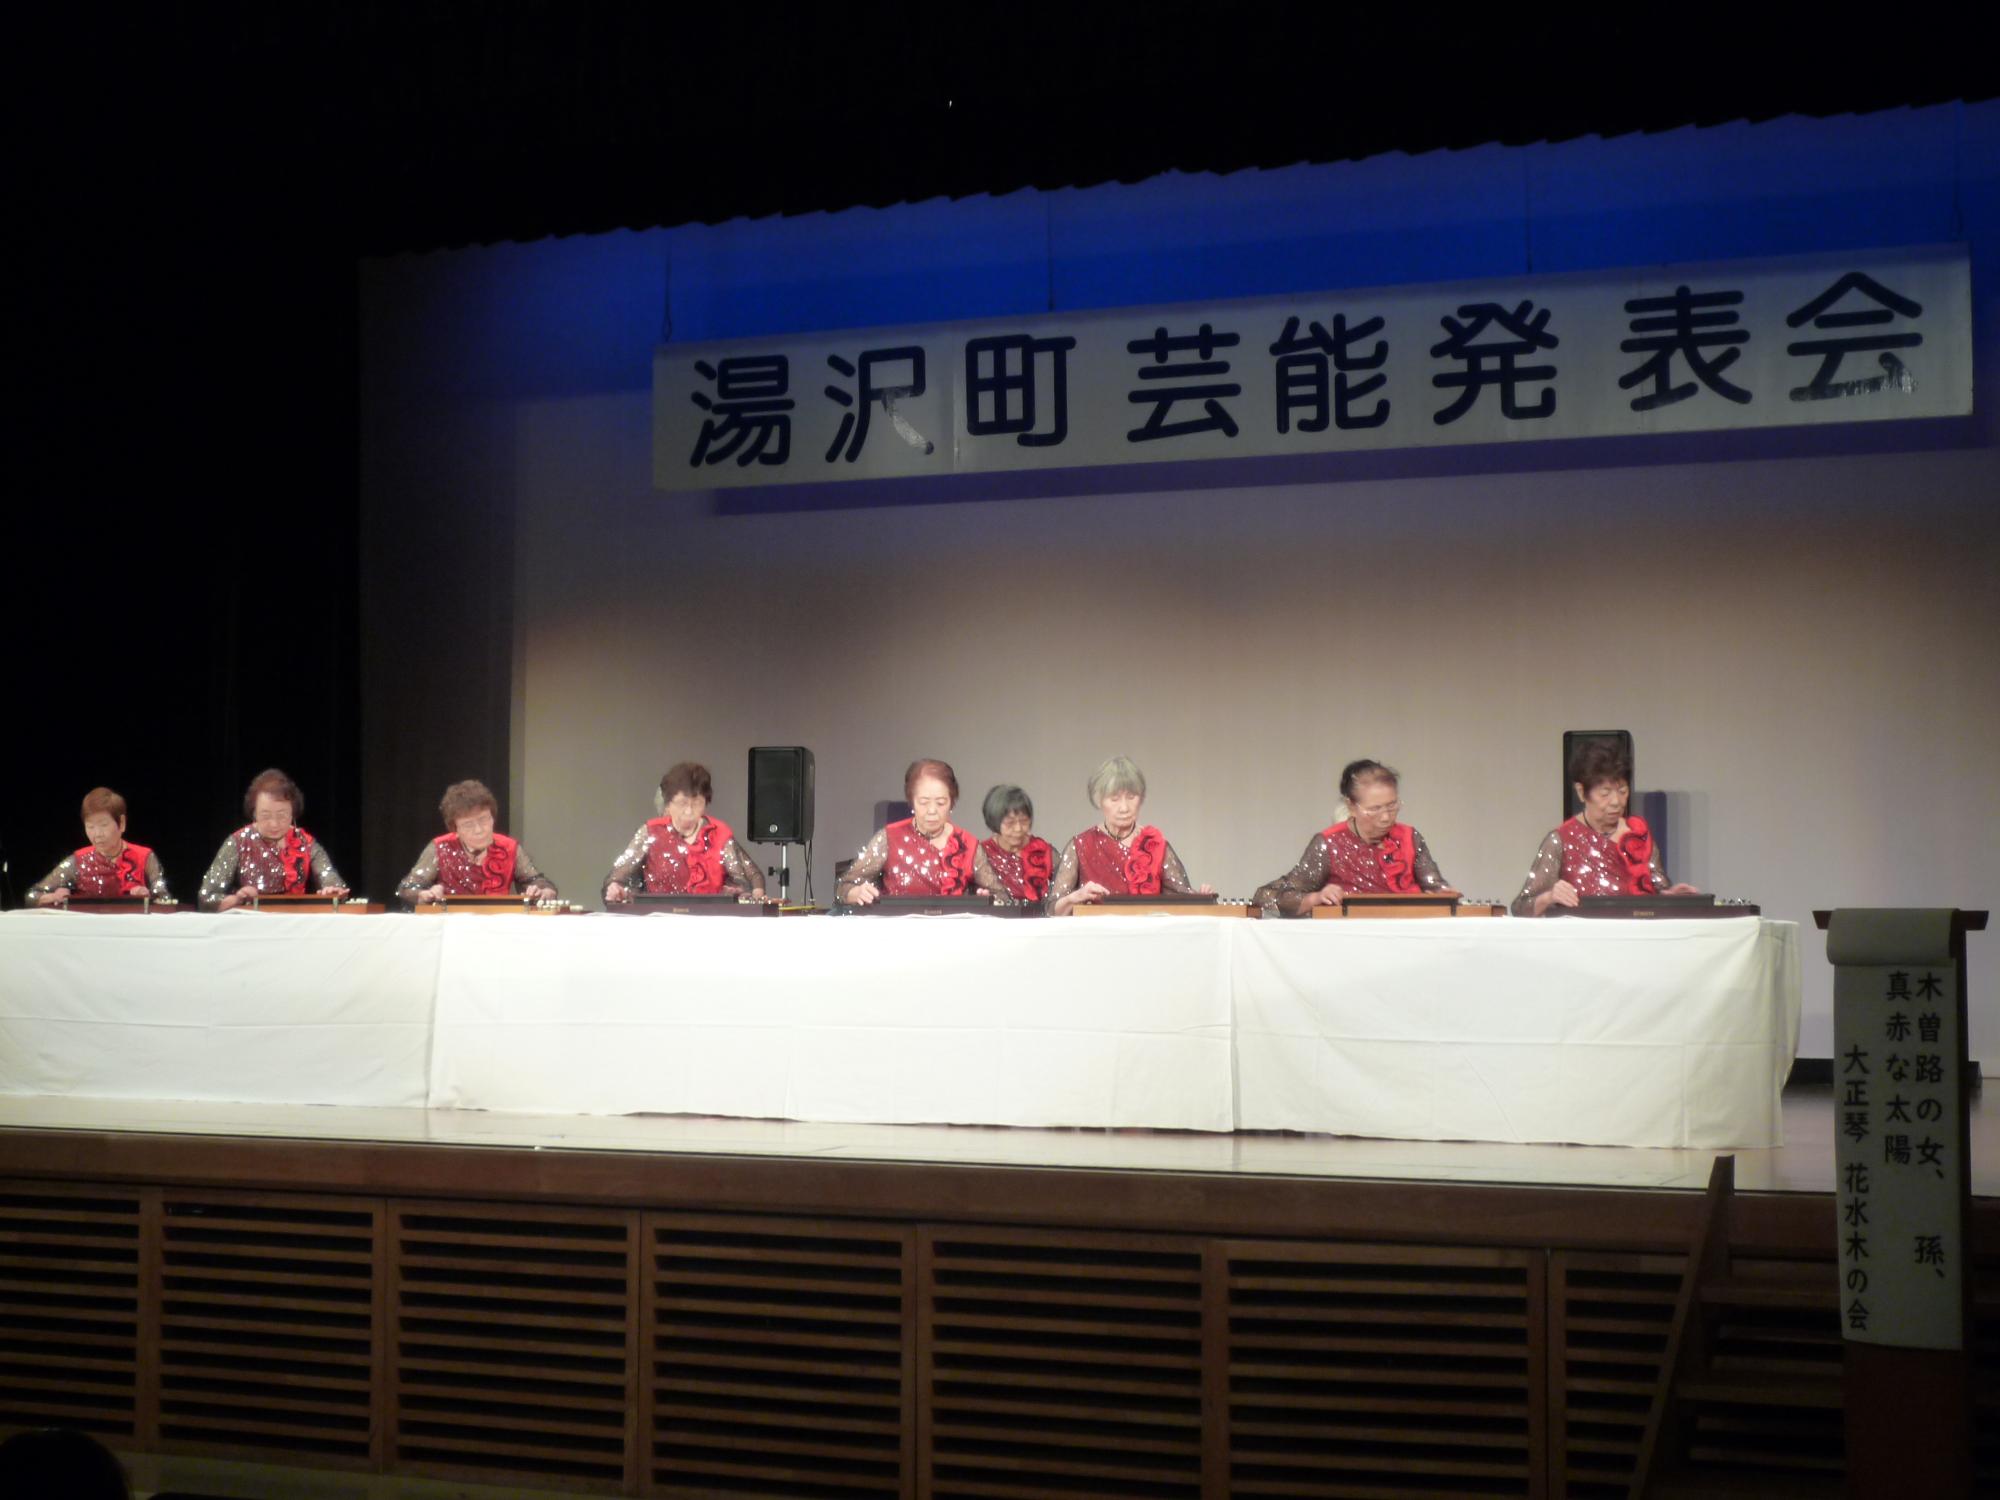 舞台の上で大正琴を演奏する花水木の会のメンバーの写真